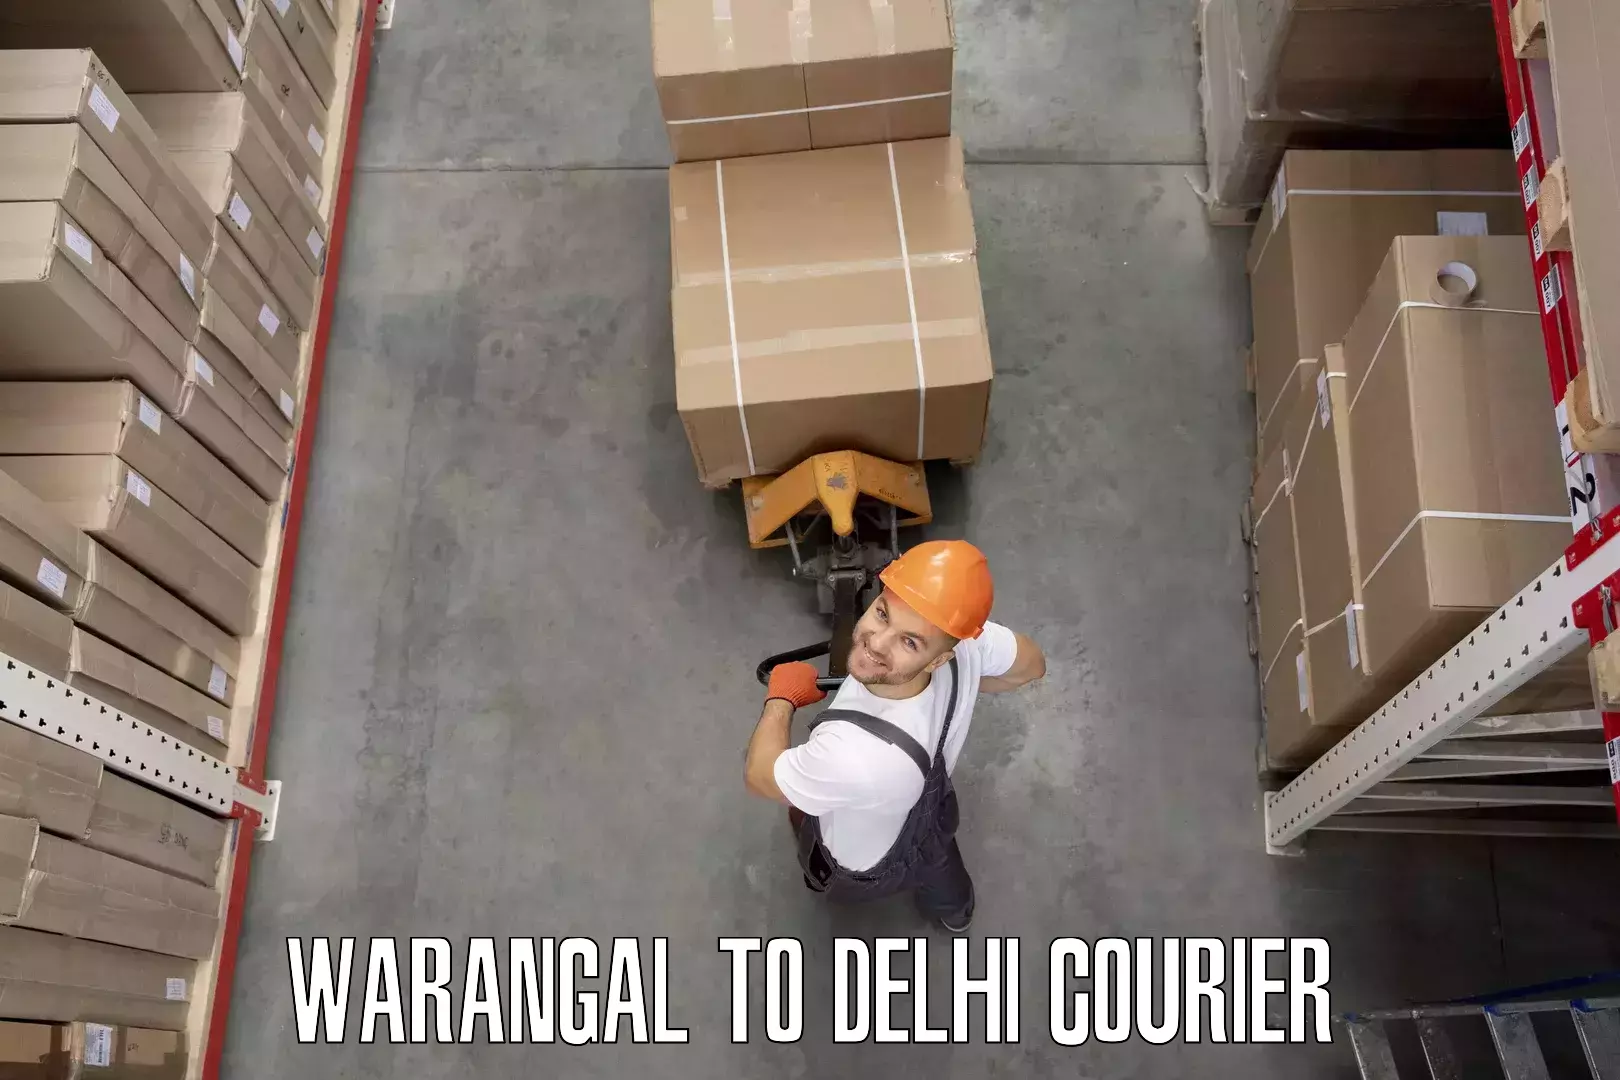 Home goods moving company Warangal to Burari